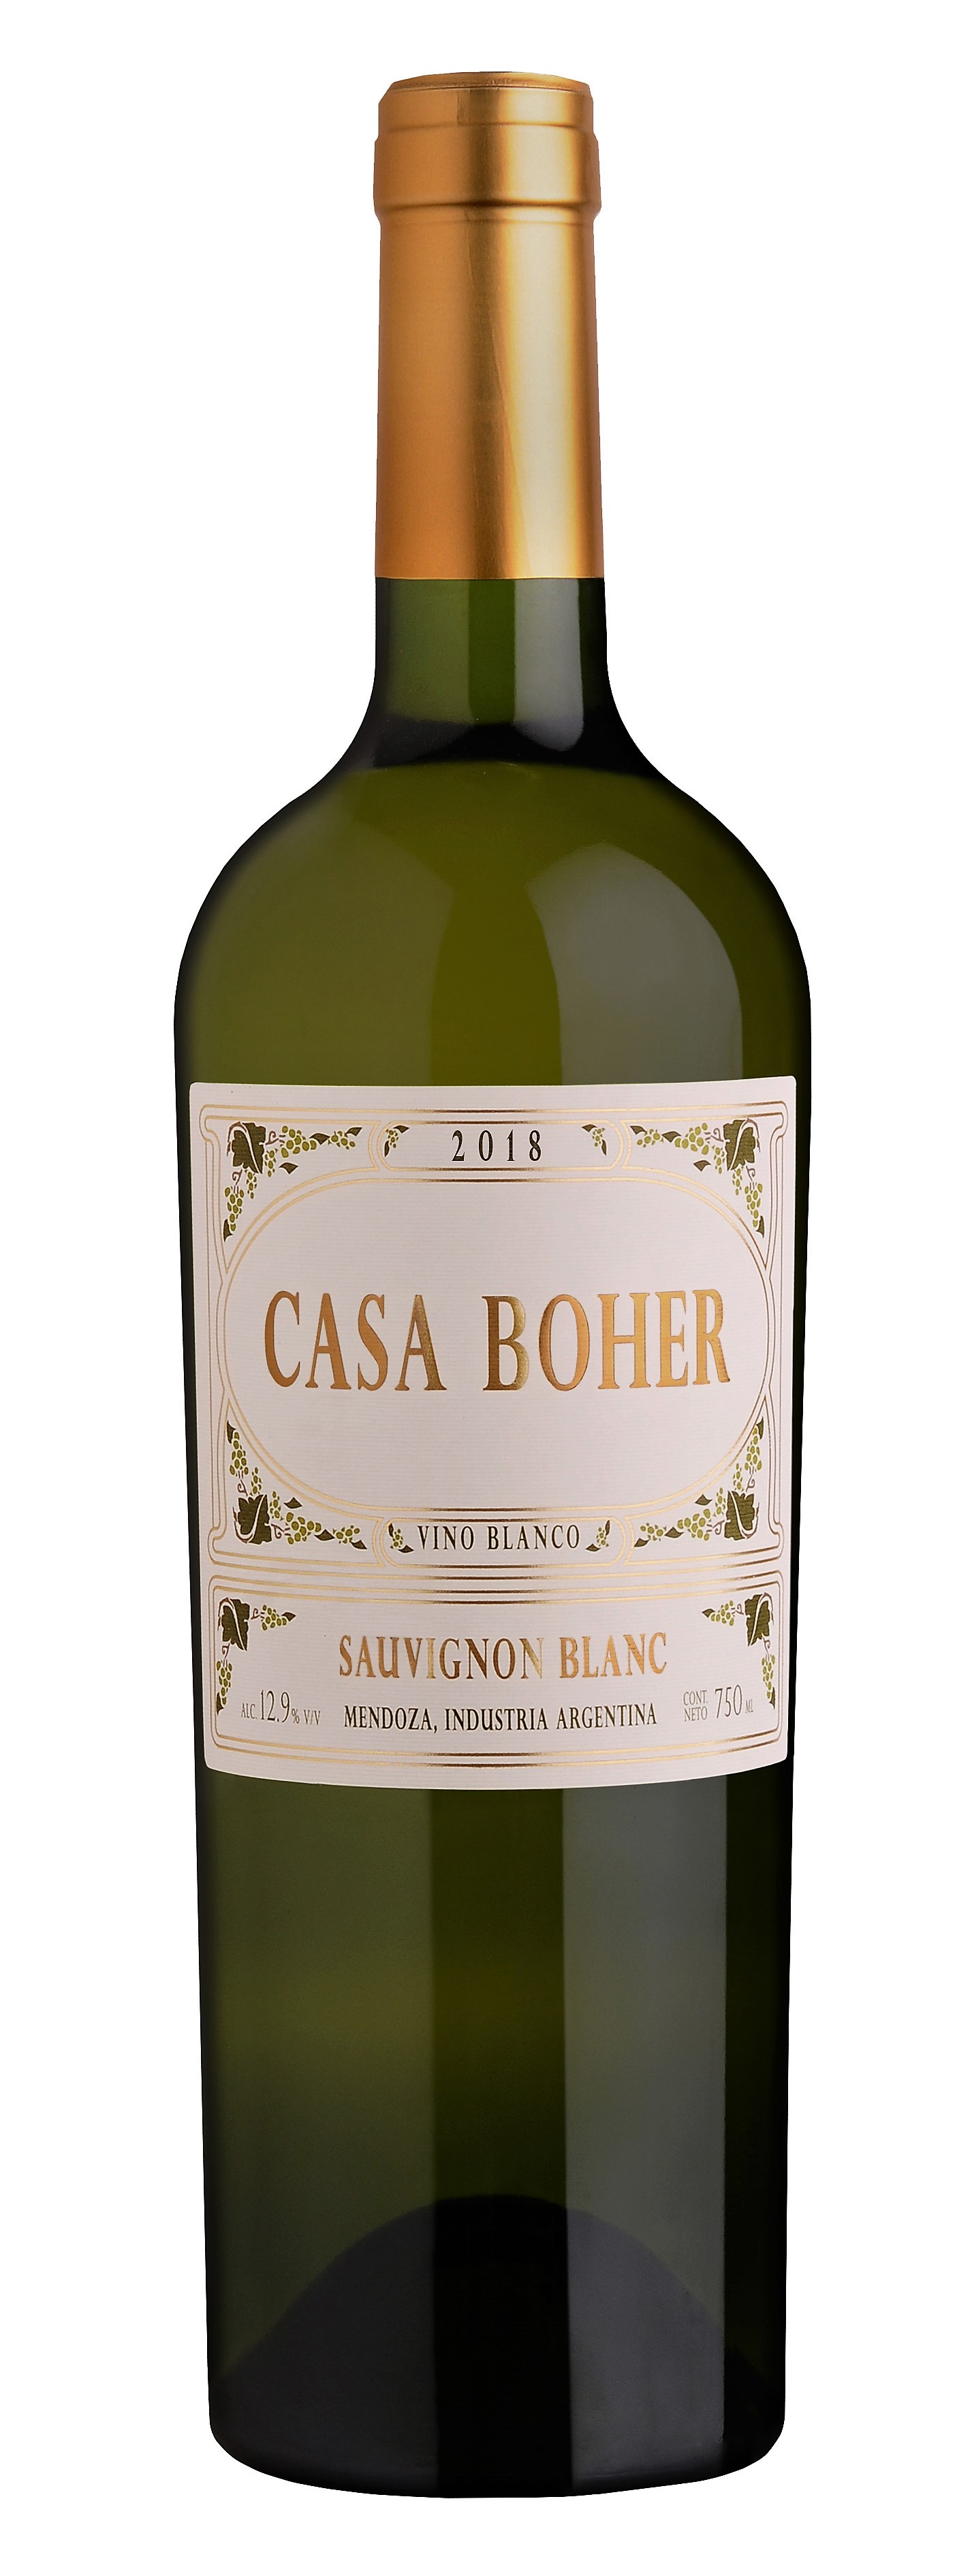 Casa Boher Sauvignon Blanc 2018